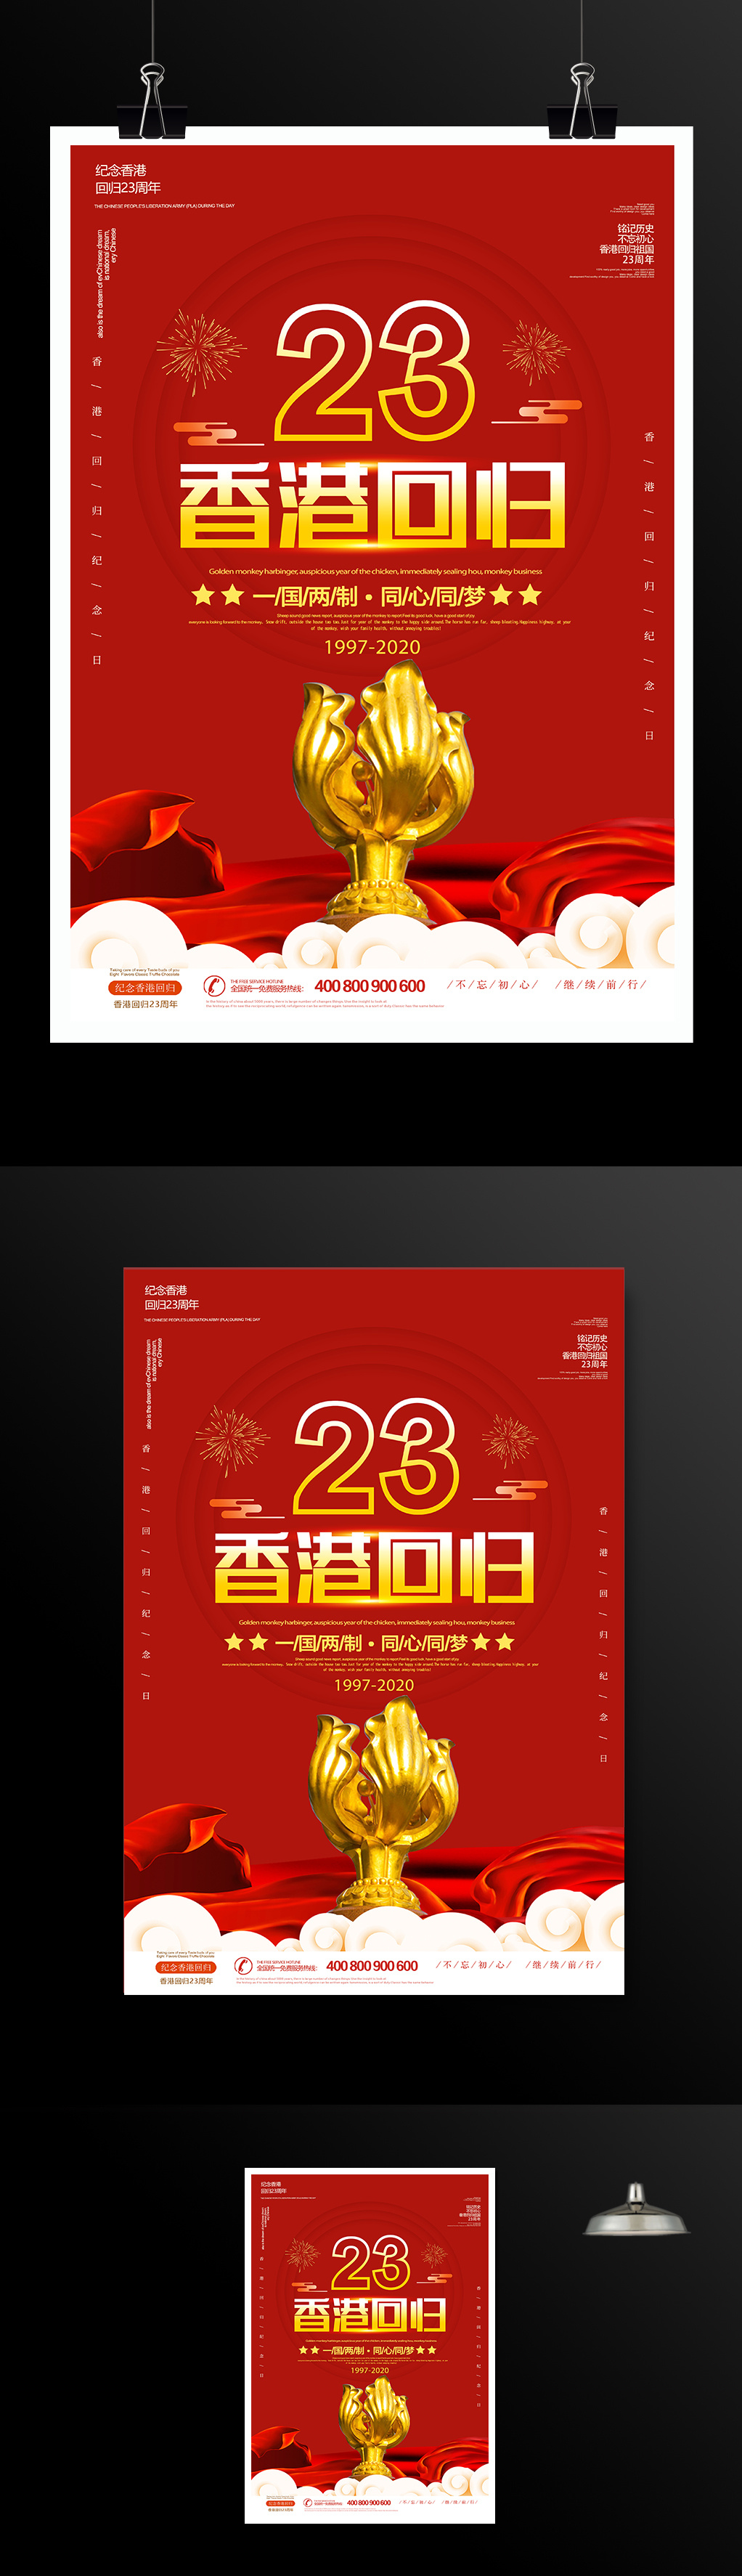 七月一日香港回归23周年纪念日宣传海报